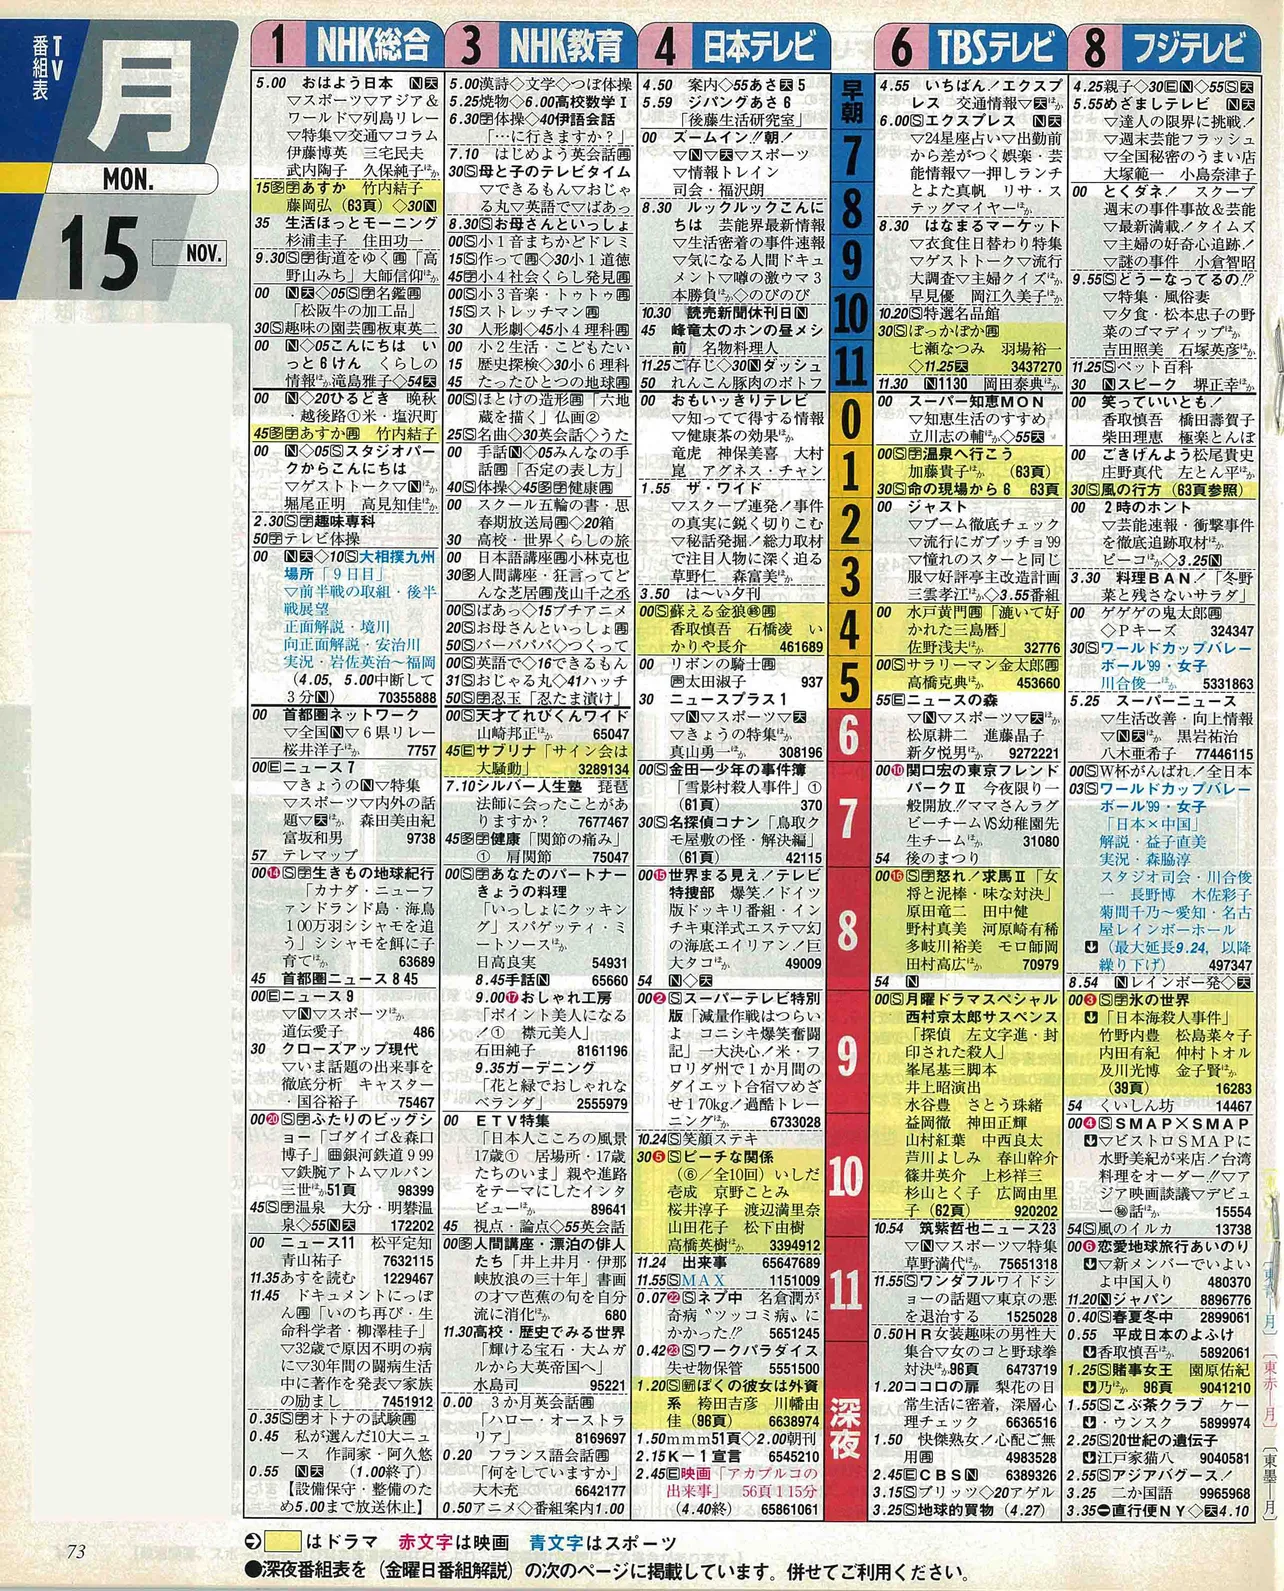 髙橋優斗のバースデー番組表（左）1999年11月15日